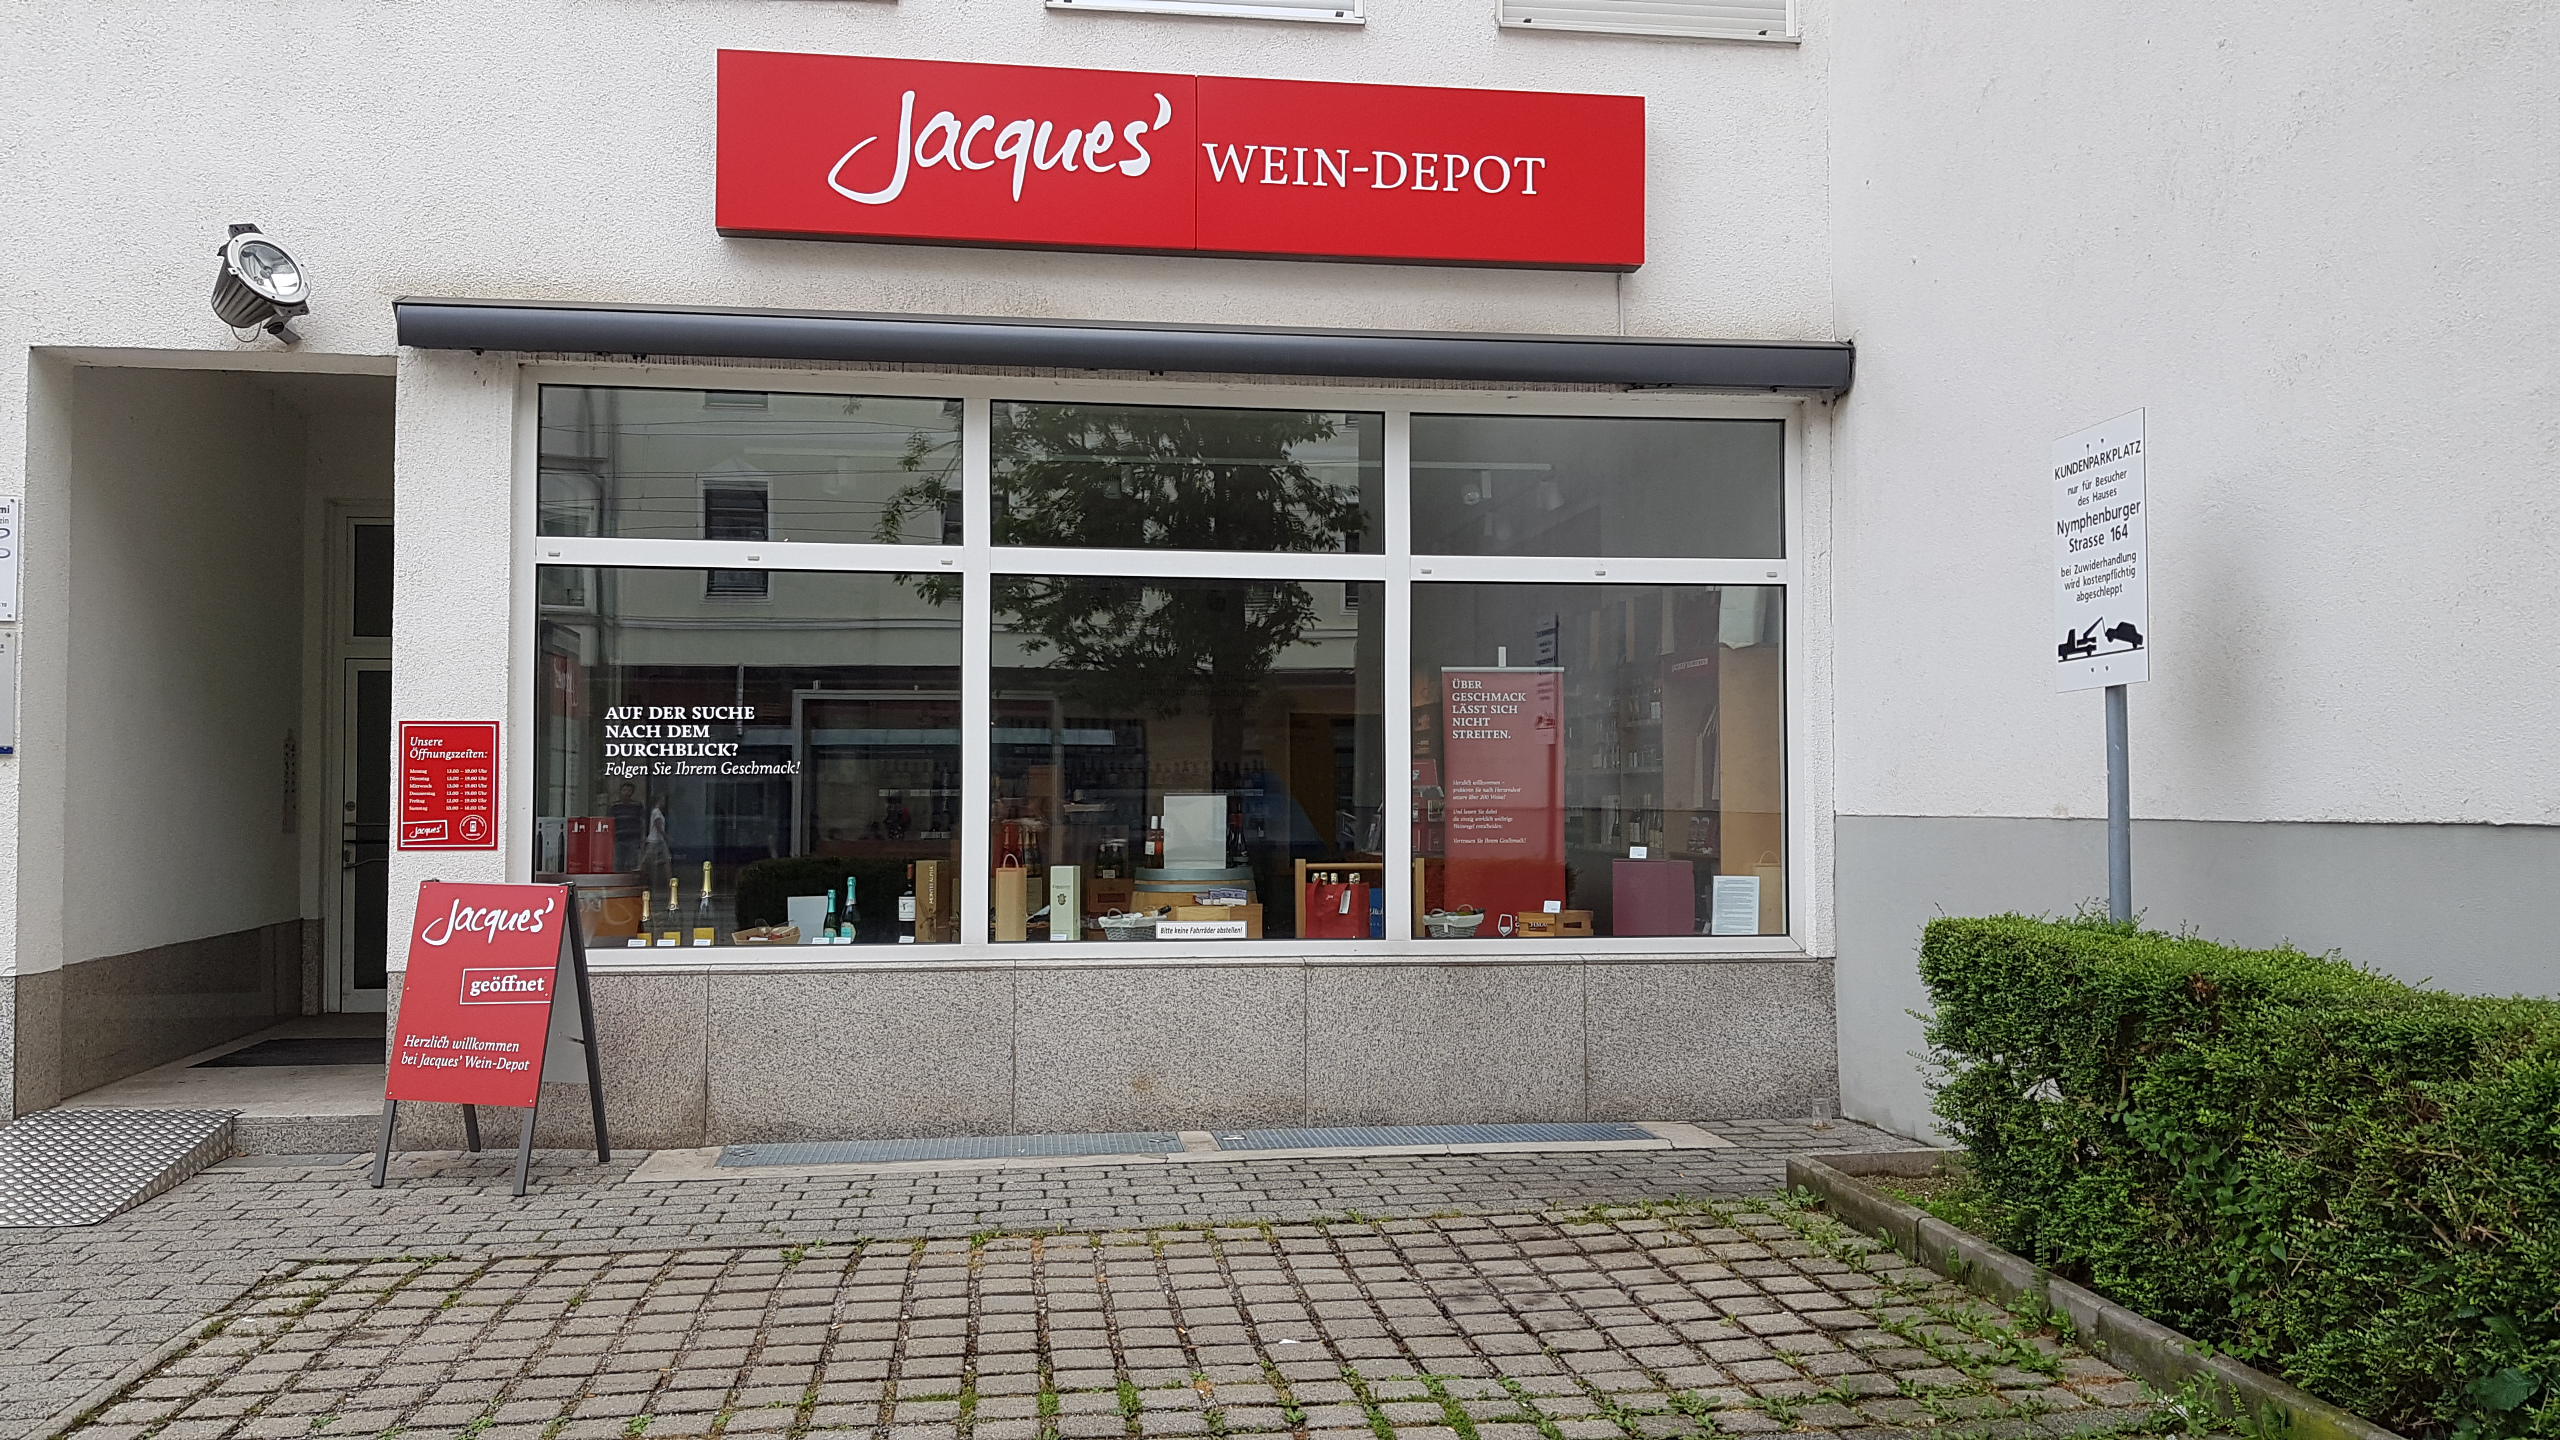 Bild 1 Jacques’ Wein-Depot München-Neuhausen in München